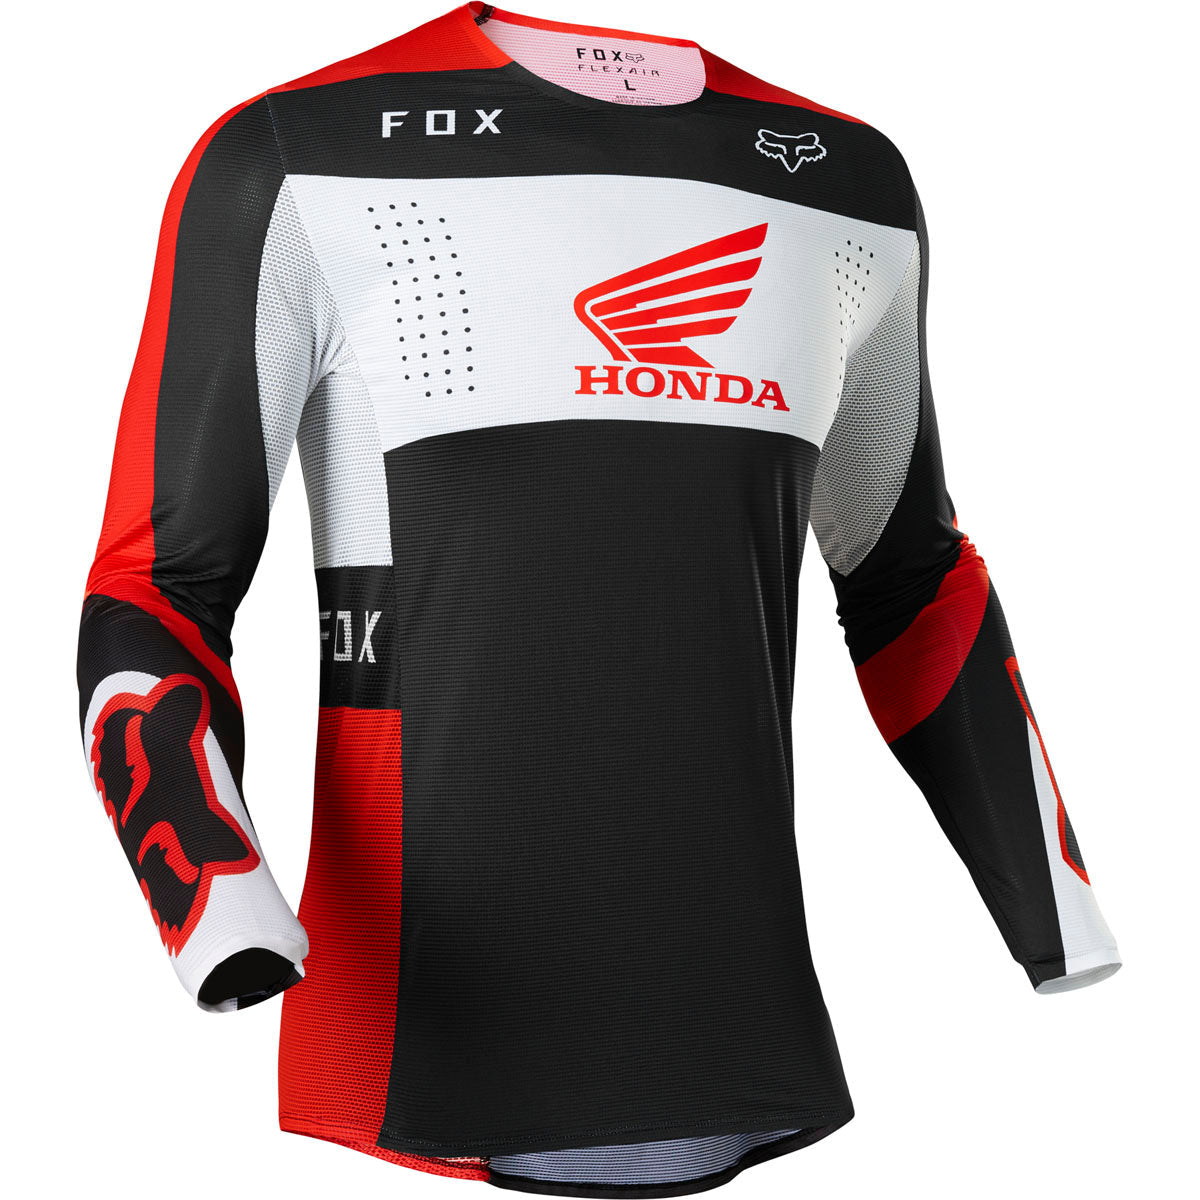 Fox Racing Flexair Honda Jersey - Fluorescent Red